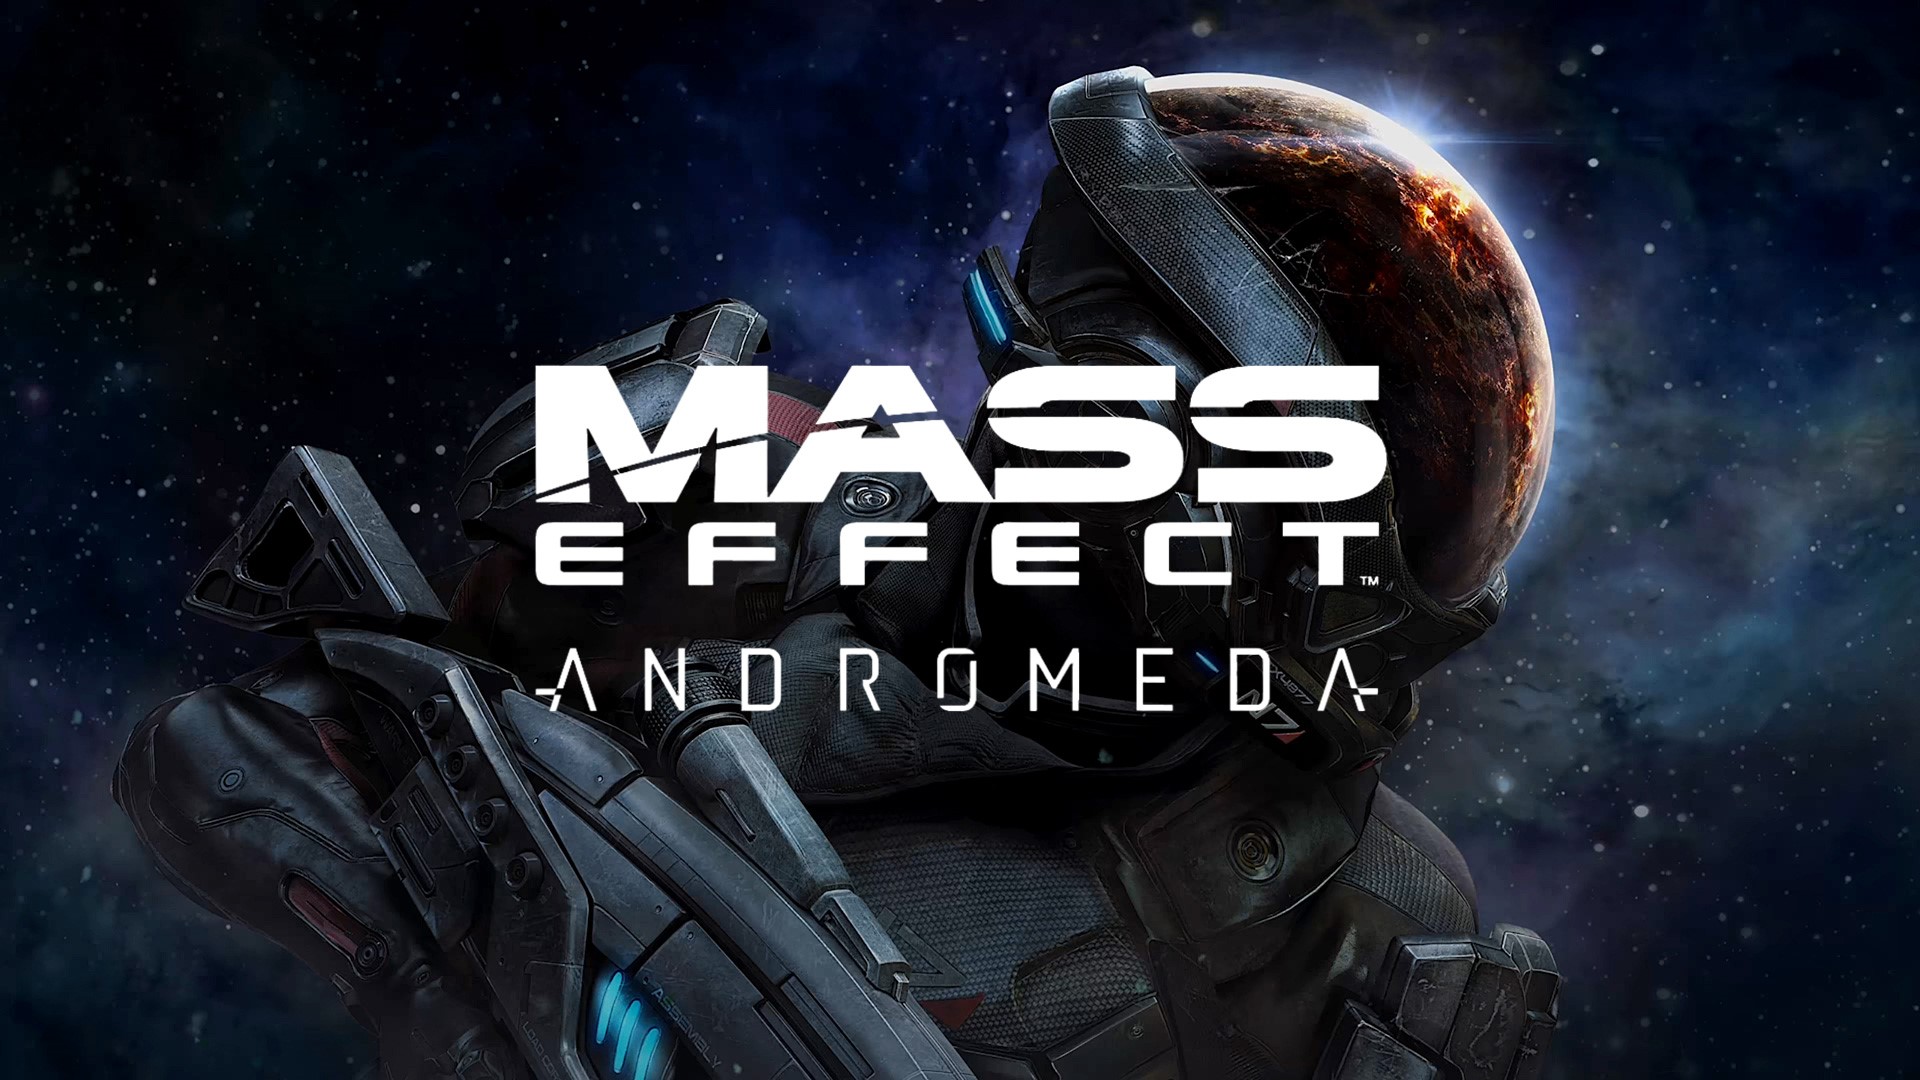 Масс вый. Масс эффект Андромеда обложка. Постер Mass Effect: Andromeda. Обложки для игр Mass Effect Andromeda. Mass Effect Andromeda обложка.